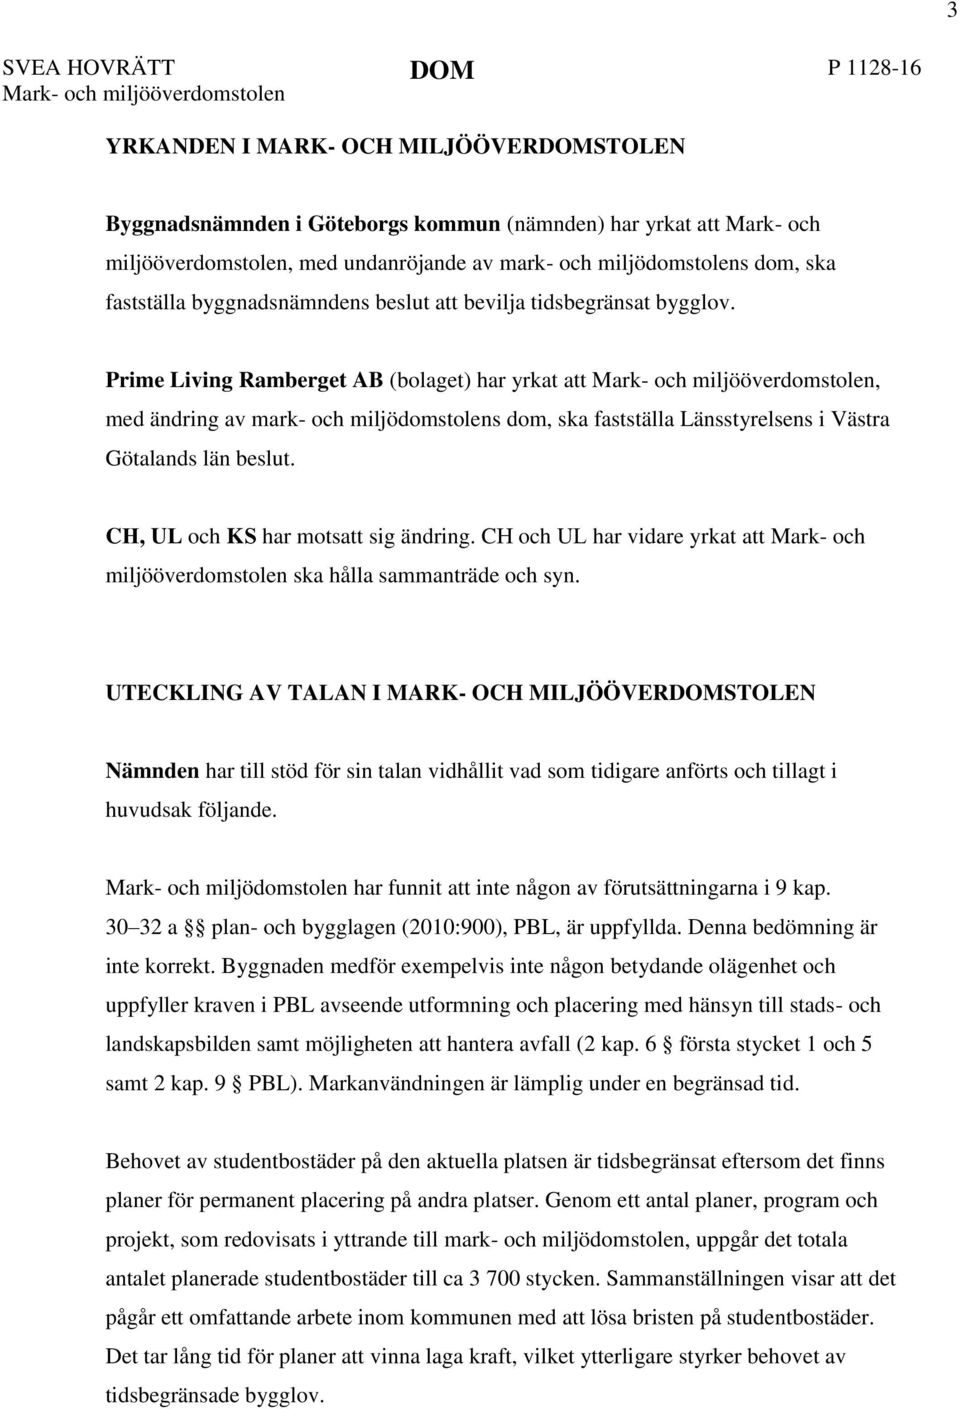 Prime Living Ramberget AB (bolaget) har yrkat att, med ändring av mark- och miljödomstolens dom, ska fastställa Länsstyrelsens i Västra Götalands län beslut. CH, UL och KS har motsatt sig ändring.